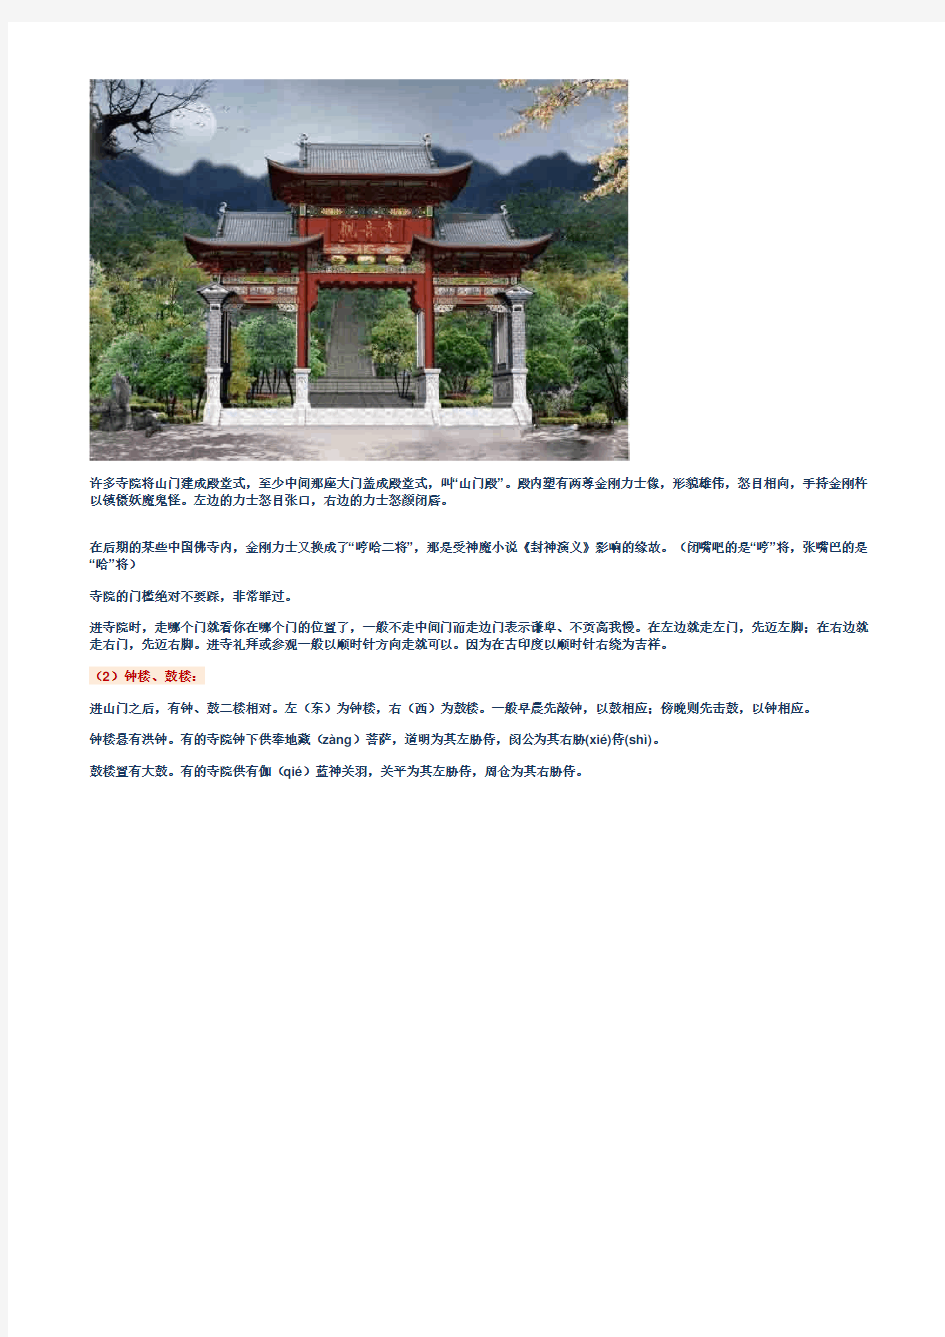 图解中国寺庙布局